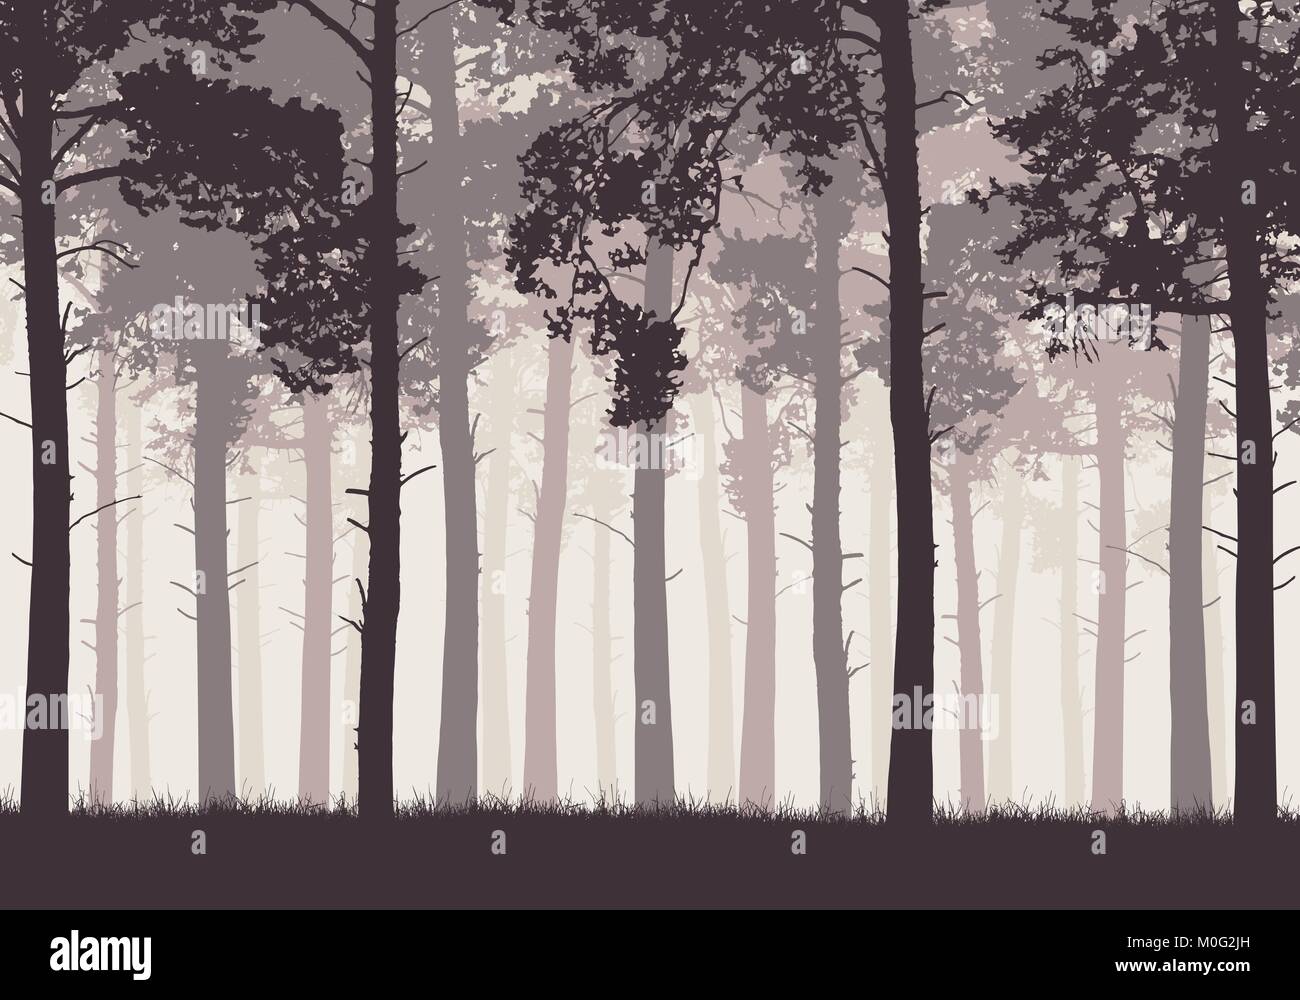 Pinienwald mit Baumstämme und Äste in retro Farben - Vektor Stock Vektor